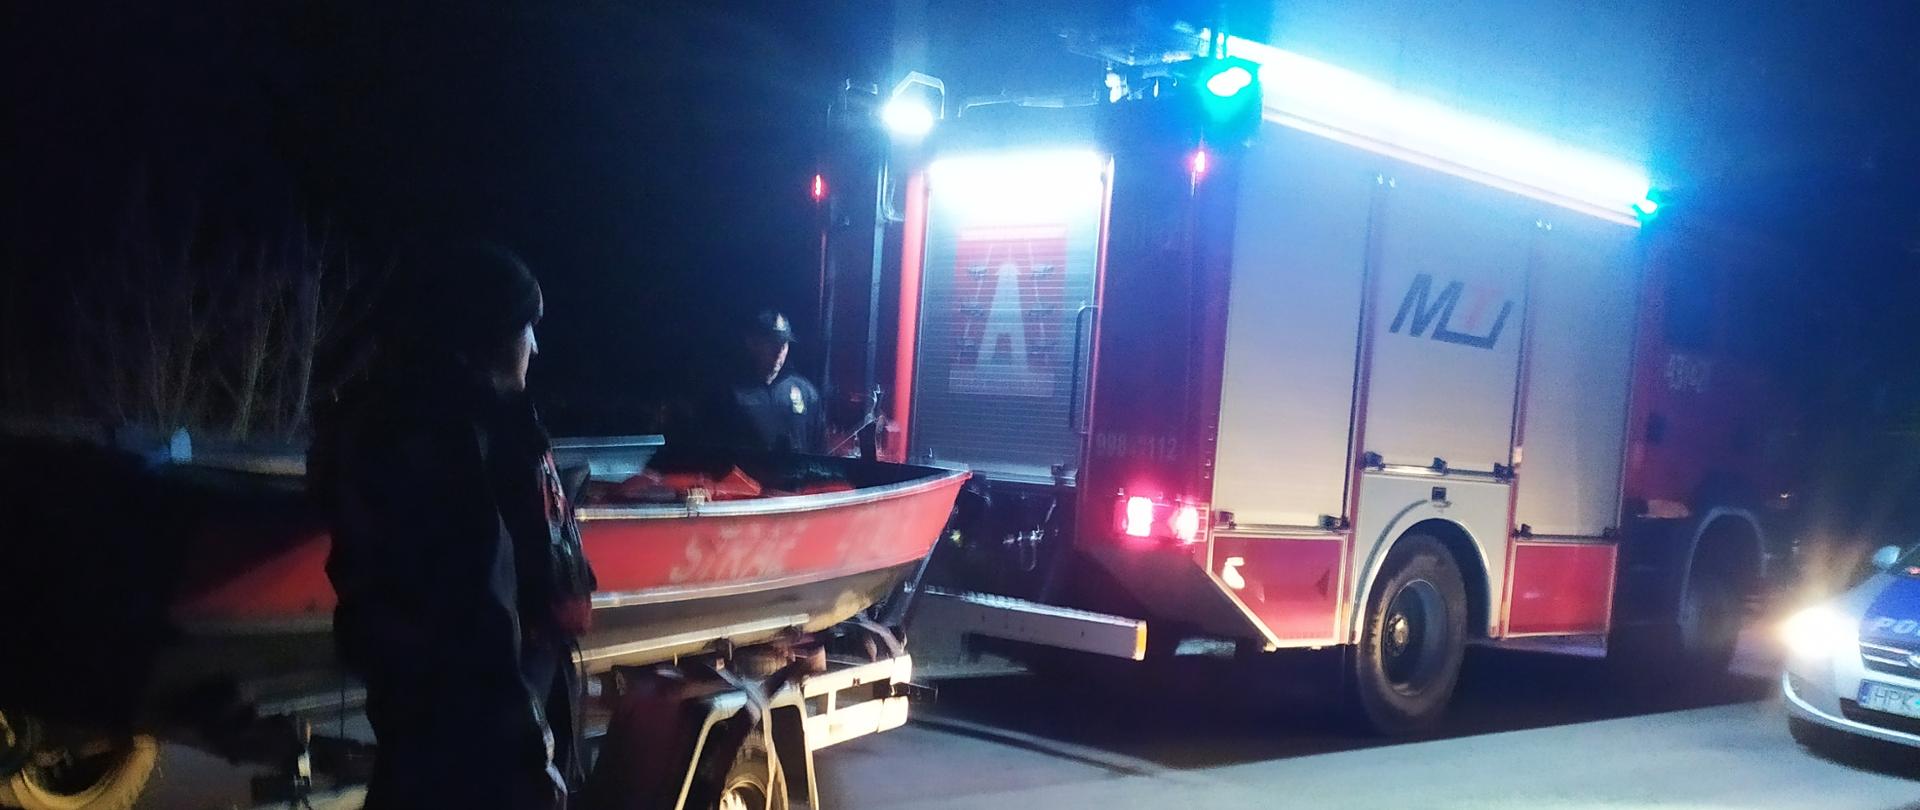 Na zdjęciu, zrobiony w porze nocnej widać wóz strażacki z podpiętą łodzią płaskodenną, a także radiowóz policyjny. Przed i za łodzią widać dwóch strażaków Państwowej Straży Pożarnej, ubranych w kombinezony służące działaniom ratowniczym na wodzie.